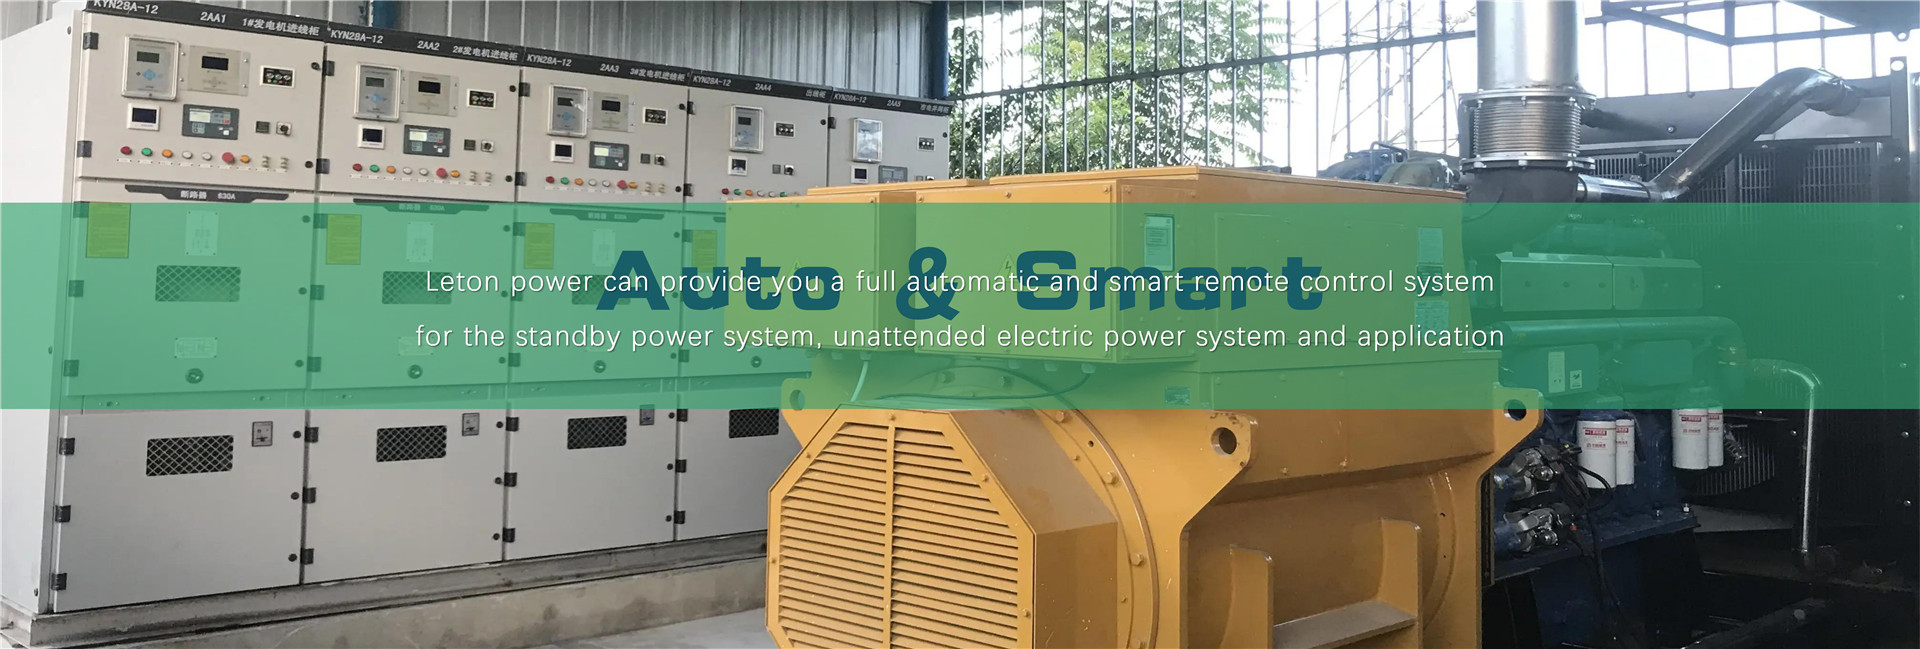 Автоматичен дизелов генератор с AMF ATS дистанционно управление на дизеловия генератор Leton powerImage